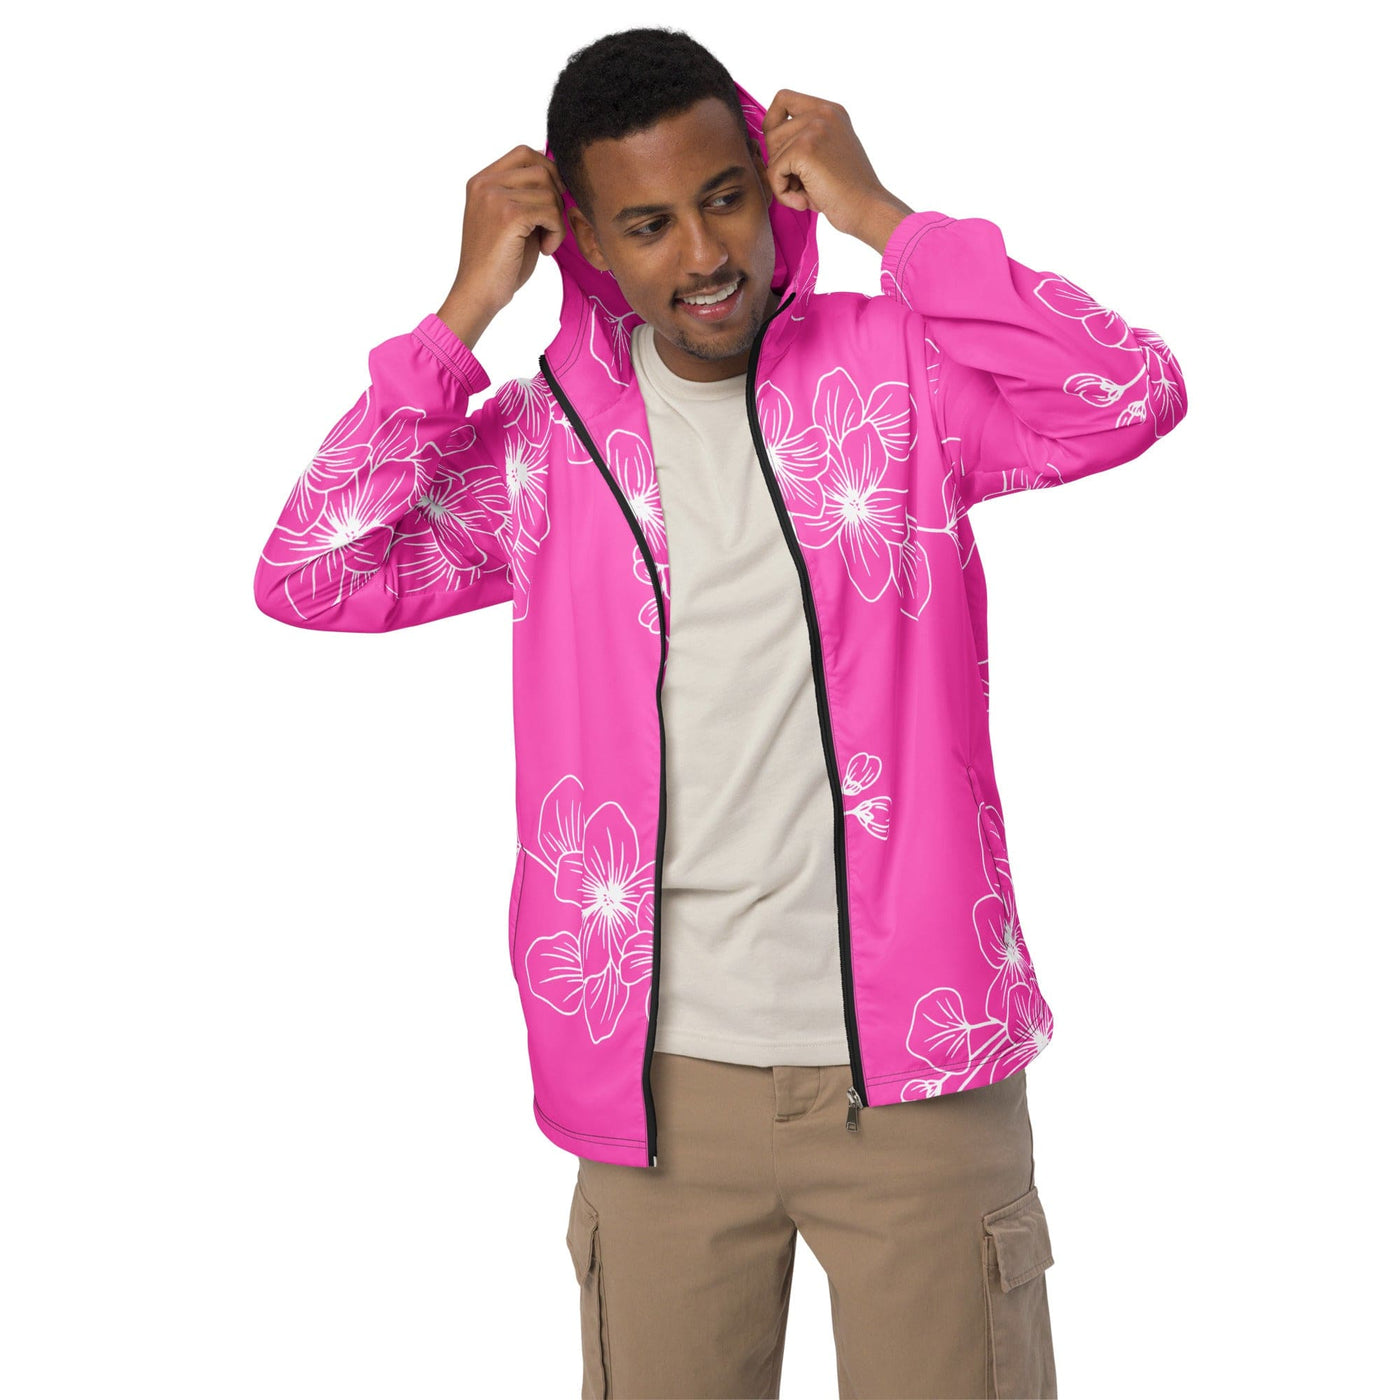 Mens Windbreaker Jacket With Hood Water-resistant Pink Floral Pattern